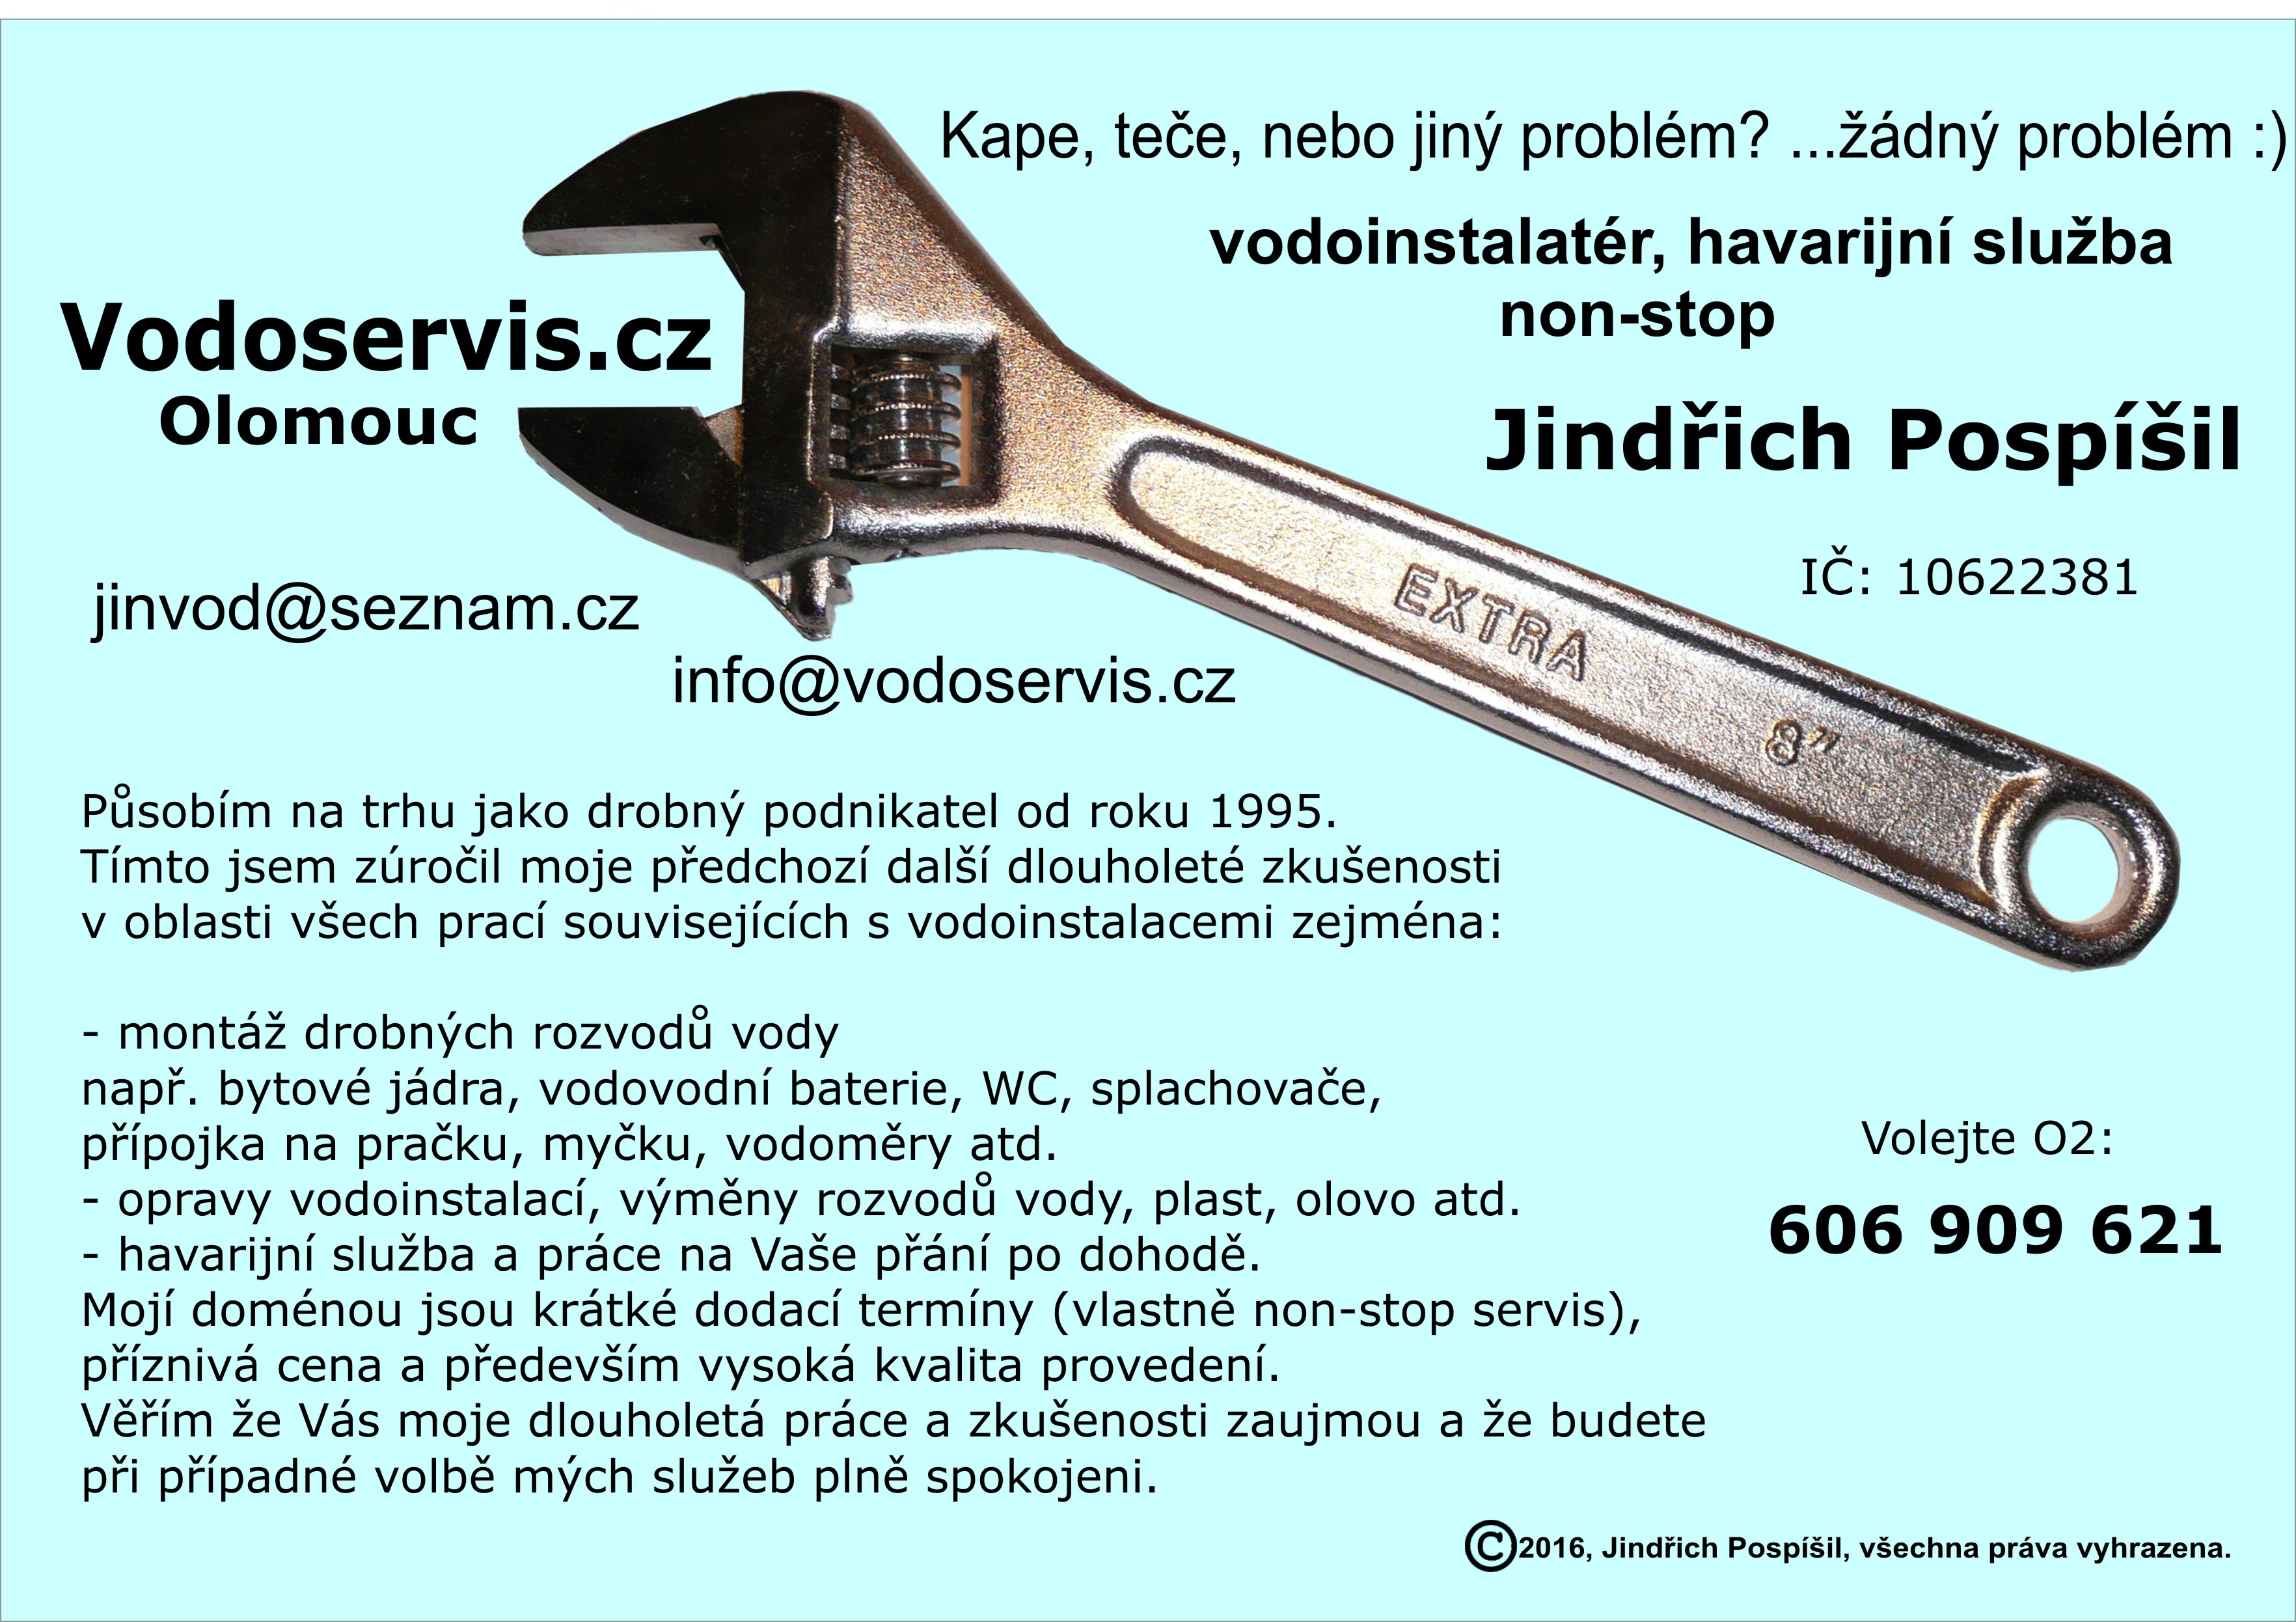 Vodoservis.cz